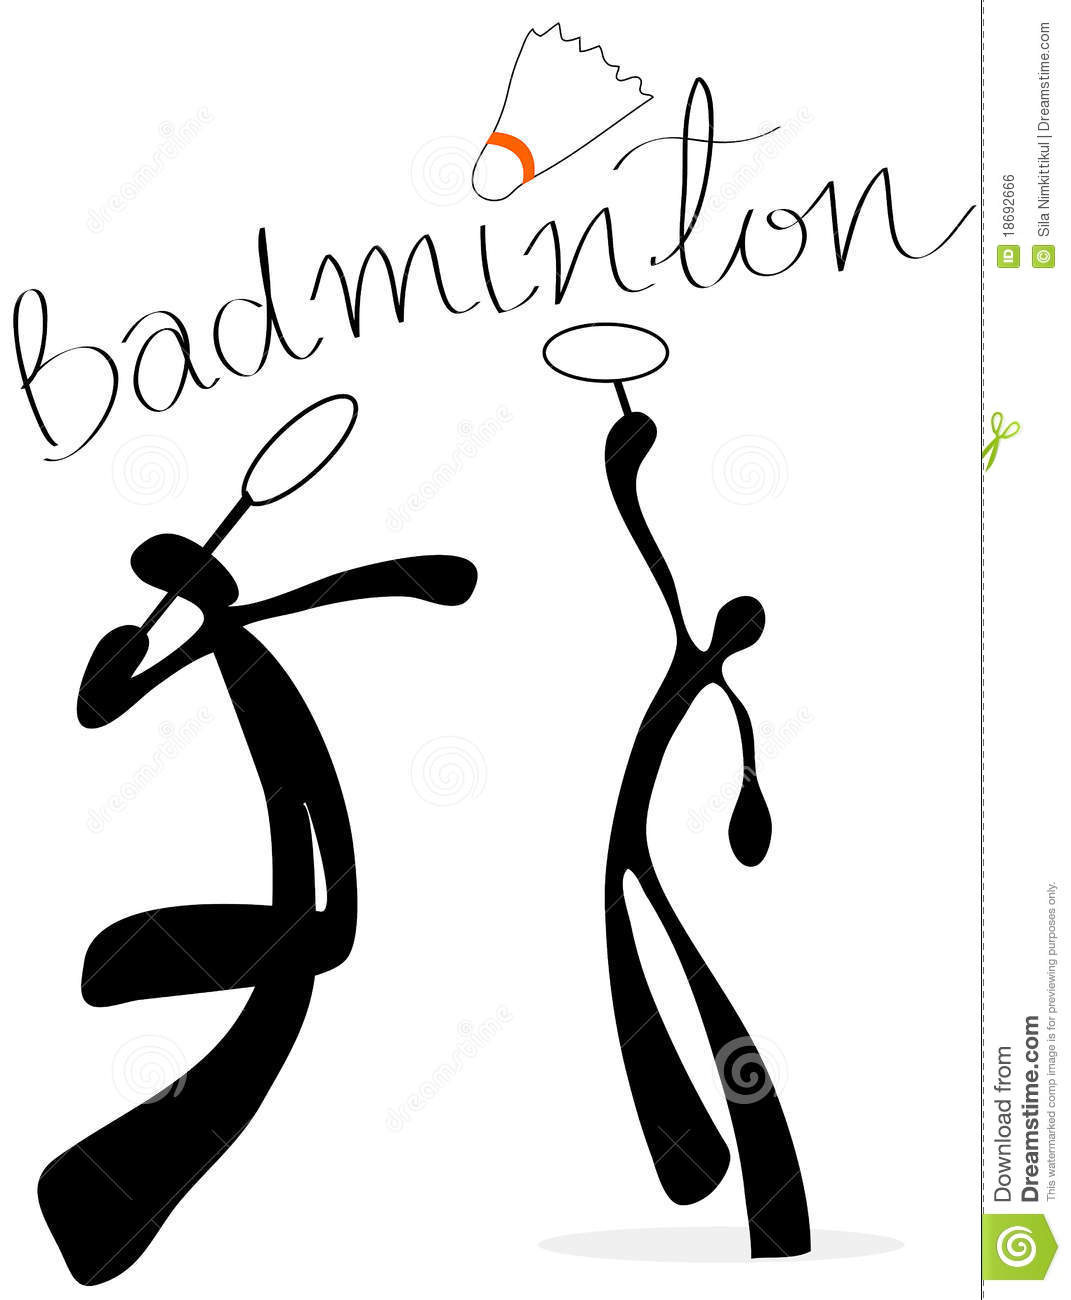 coloriage badminton